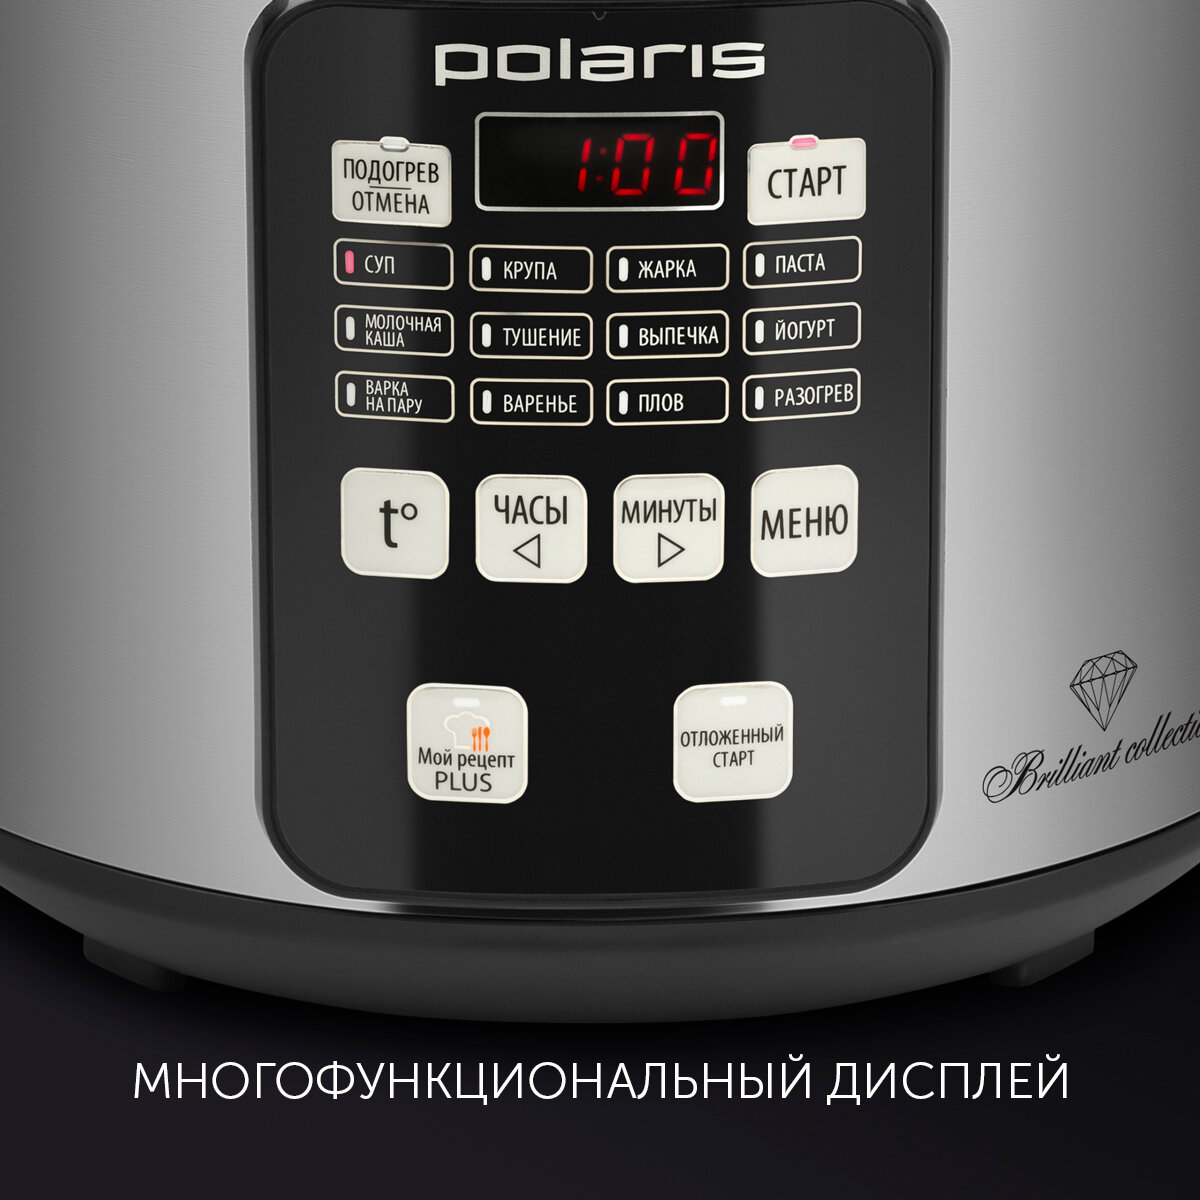 Мультиварка Polaris PMC 0593AD